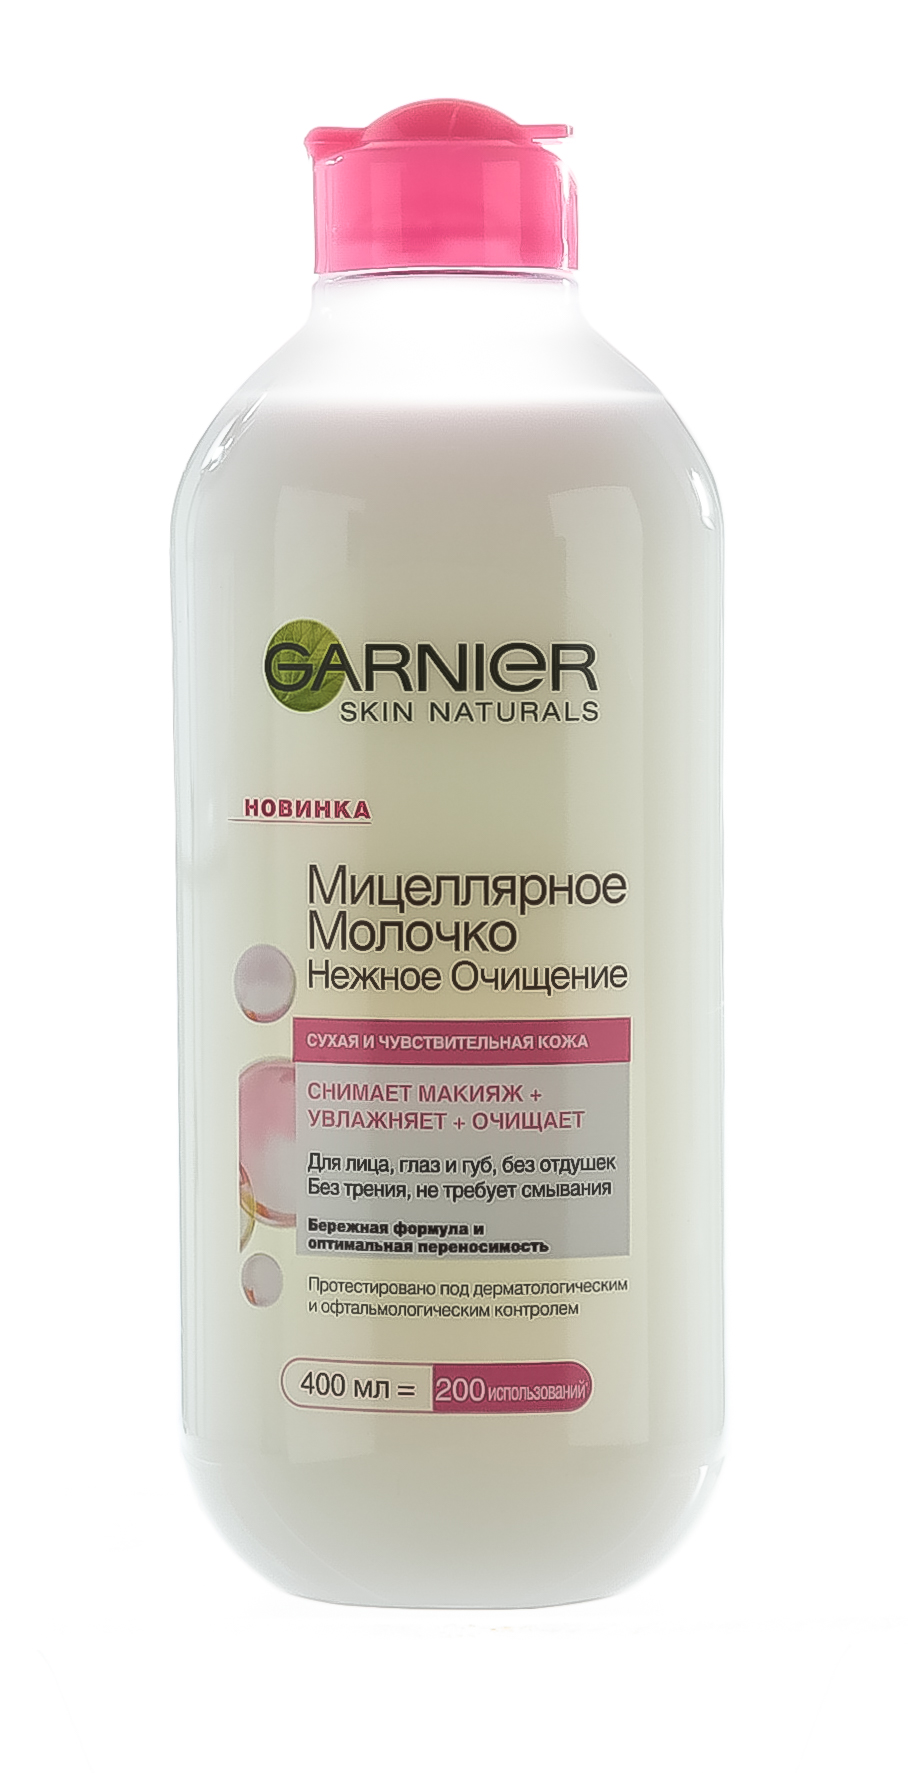 Garnier Мицеллярное молочко Нежное очищение для сухой и чувствительной кожи, 400 мл (Garnier, Skin Naturals)